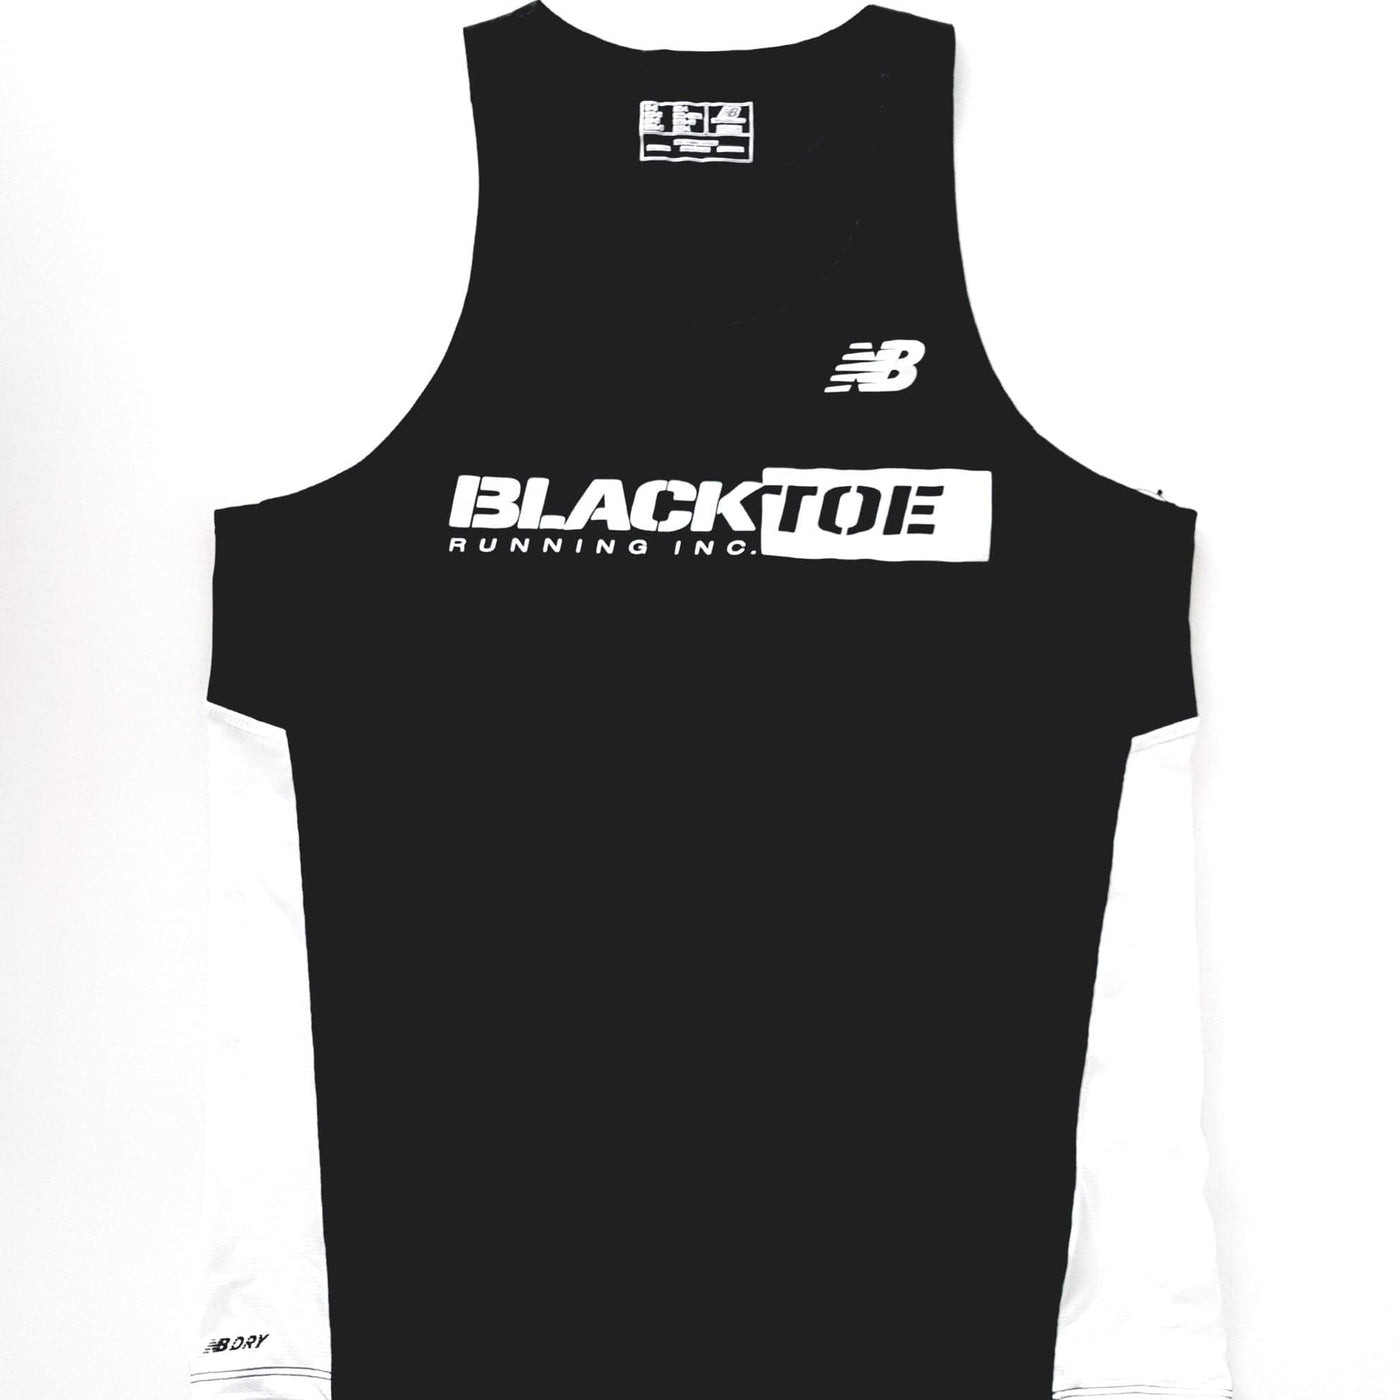 BlackToe Men's NB Singlet Men's Tops - BlackToe Running#colour_black-white